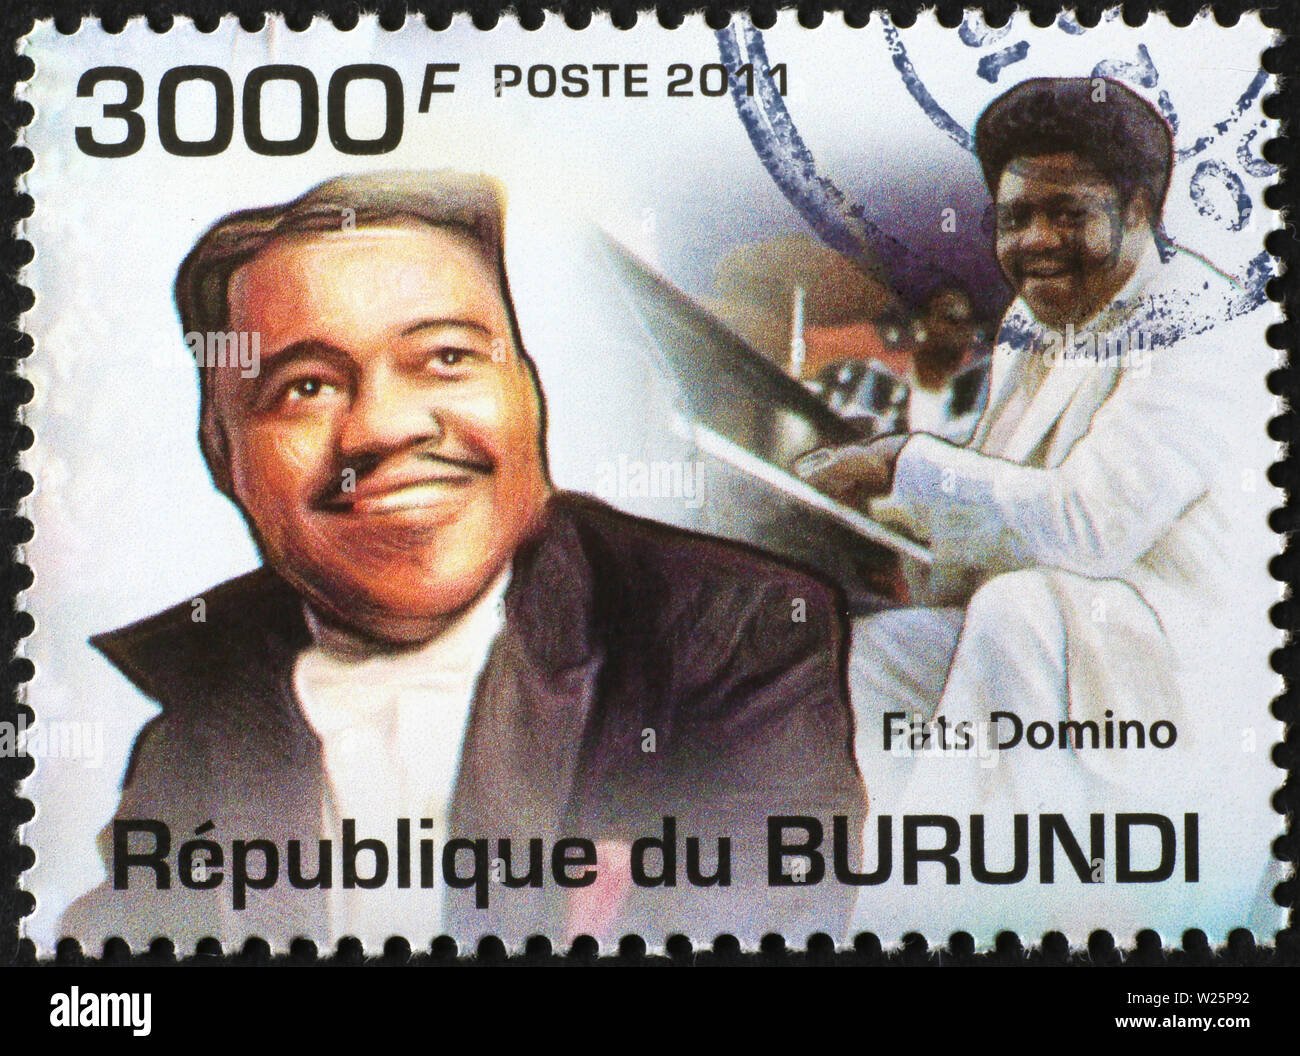 Fats Domino sur timbre-poste du Burundi Banque D'Images